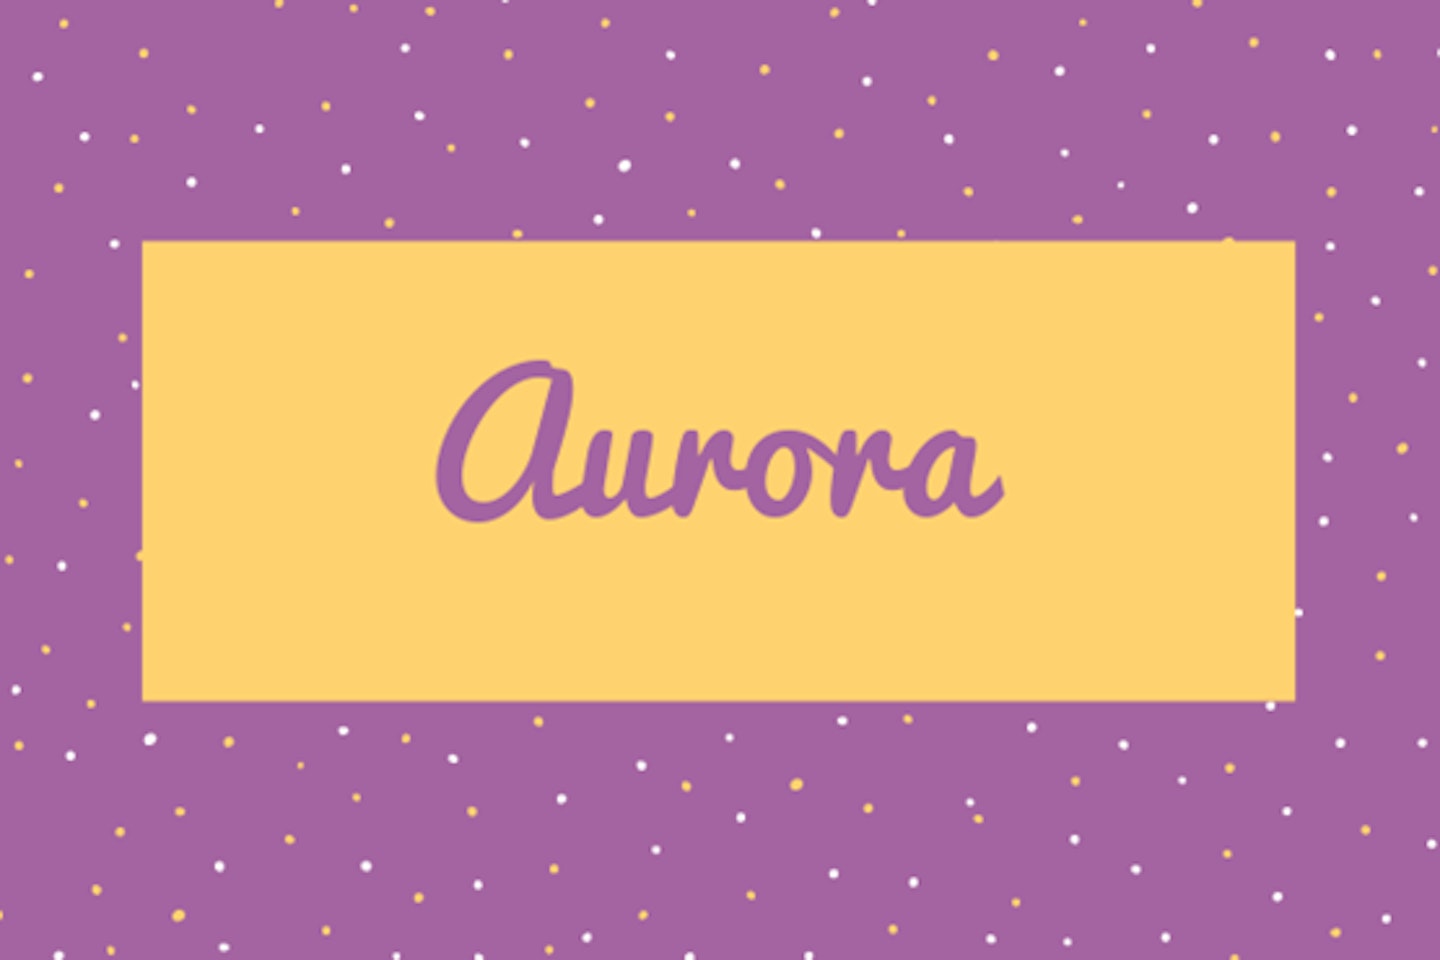 7) Aurora